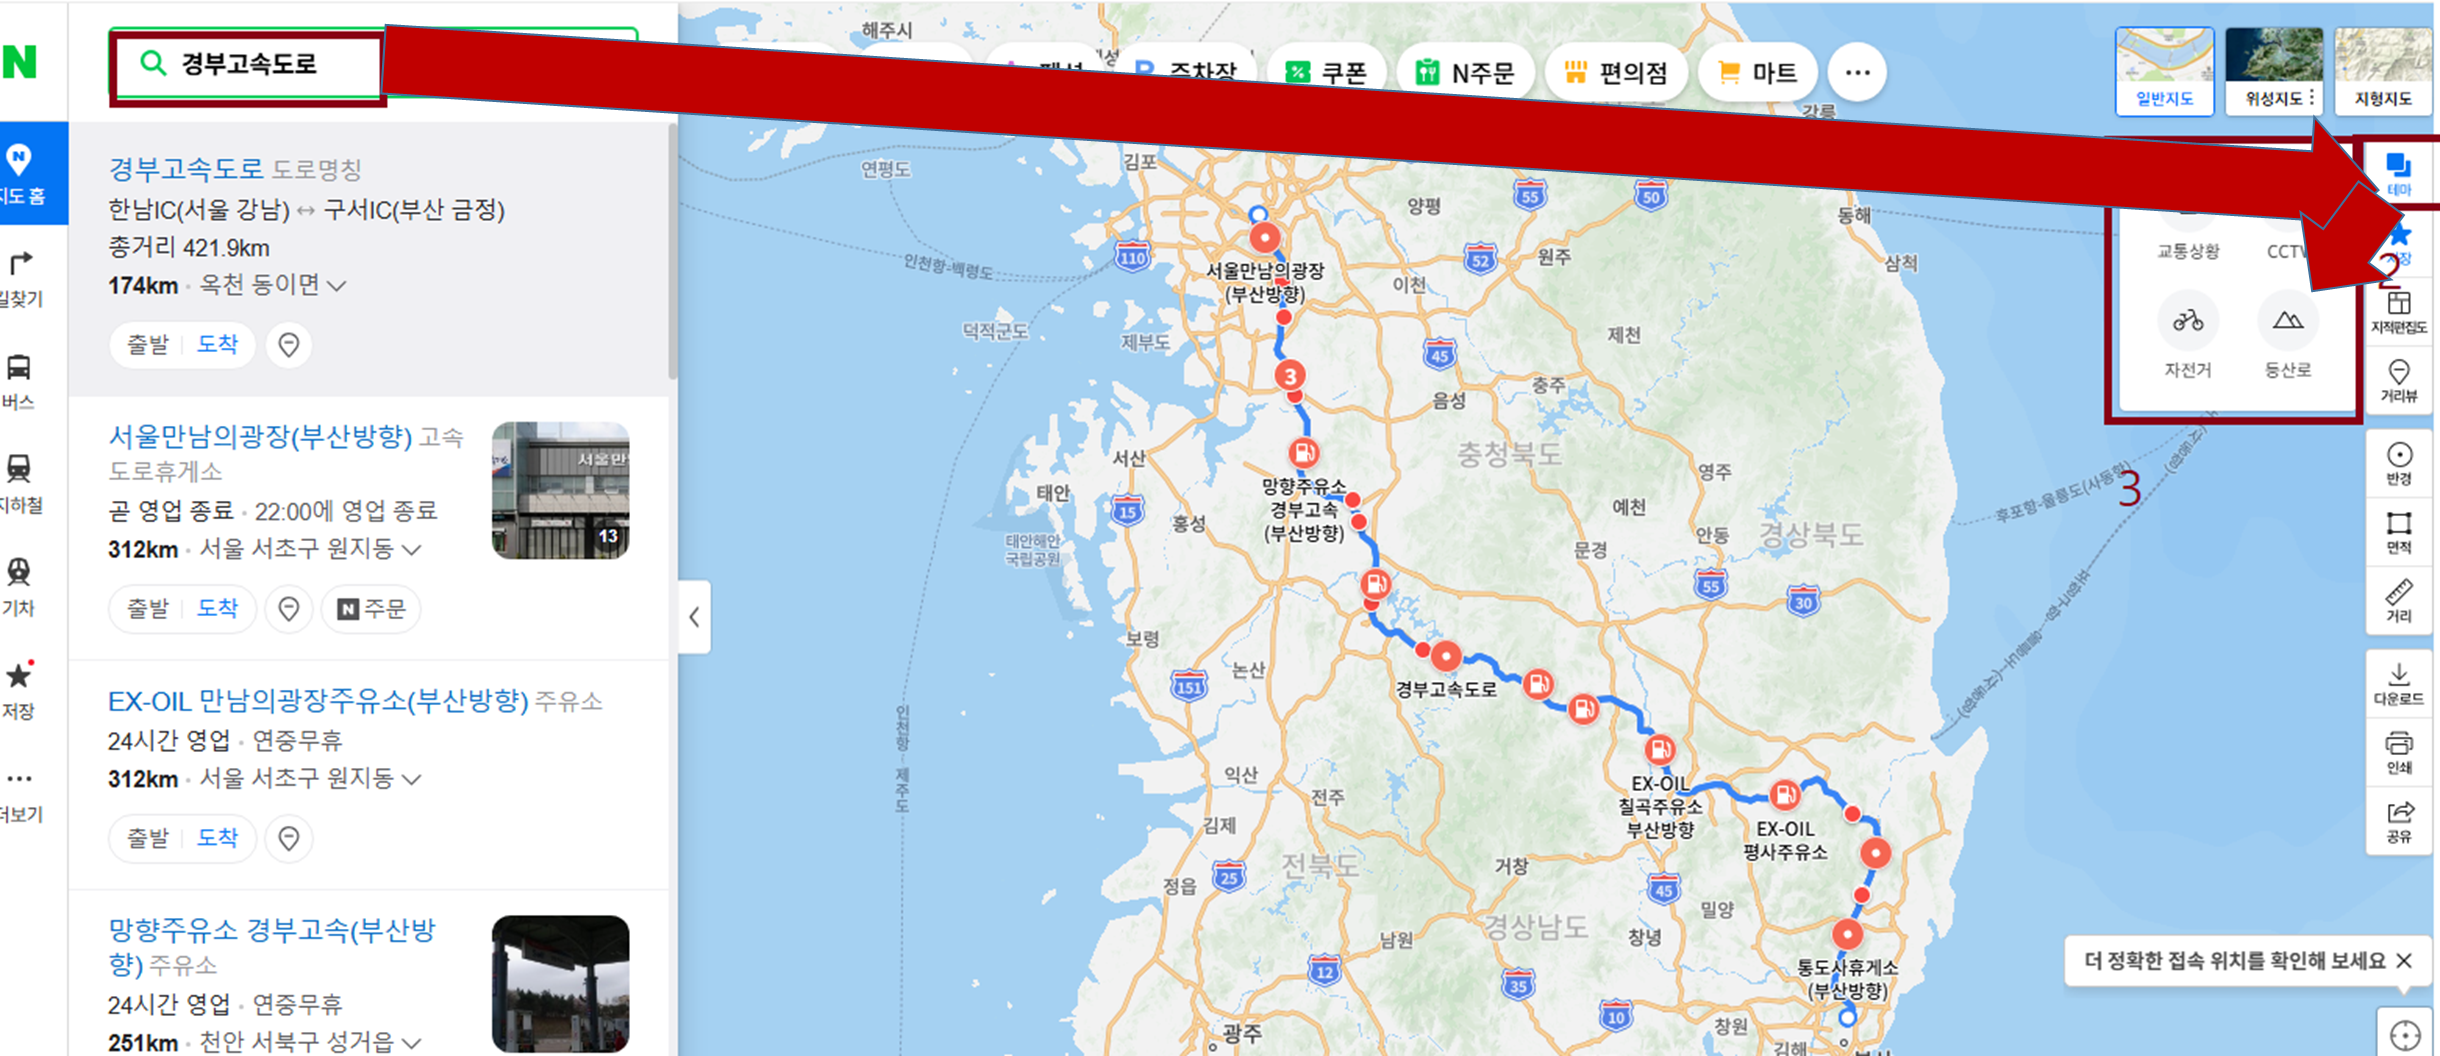 고속도로 실시간 교통정보 cctv 지도 정보 정리 추천 BEST 5 - 네이버 지도